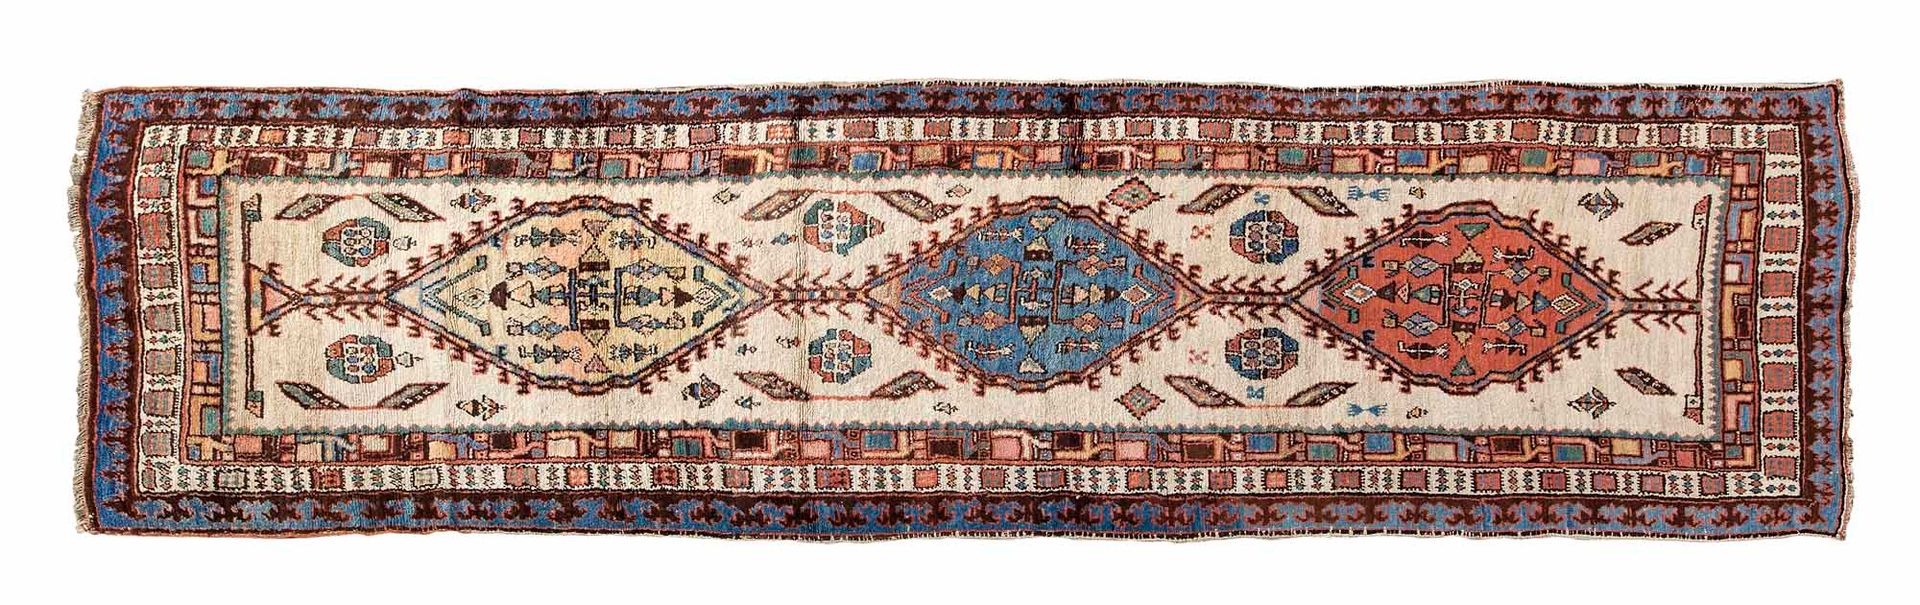 Null SARAB画廊地毯（伊朗），20世纪中期

尺寸：343 x 116厘米。

技术特点 : 羊毛天鹅绒，棉质底板。

象牙色的背景由三个砖色、蓝色和象&hellip;